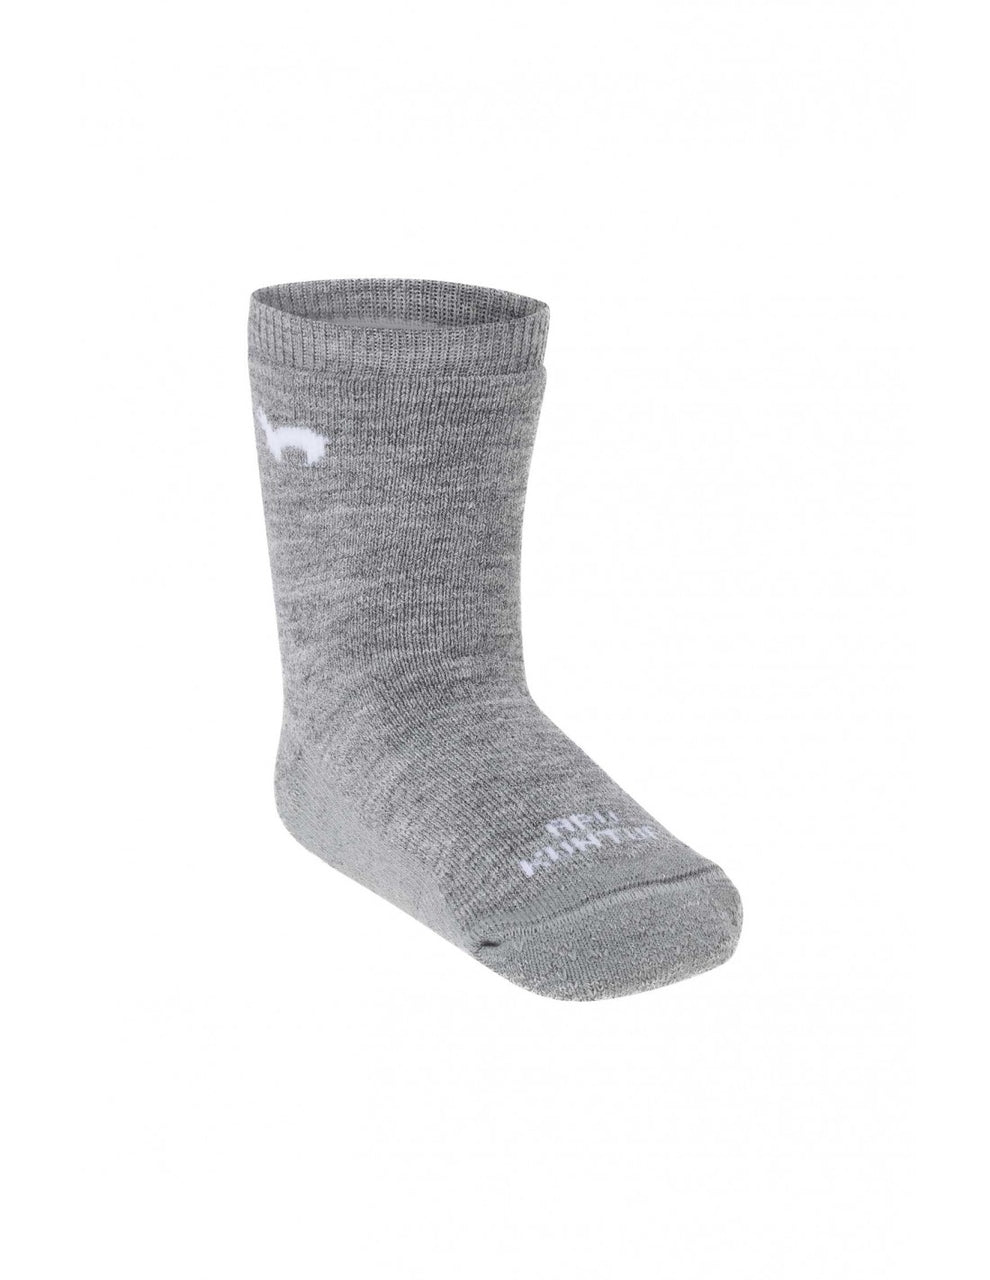 Alpaka Socken mit Stopper - grau - Familienbande